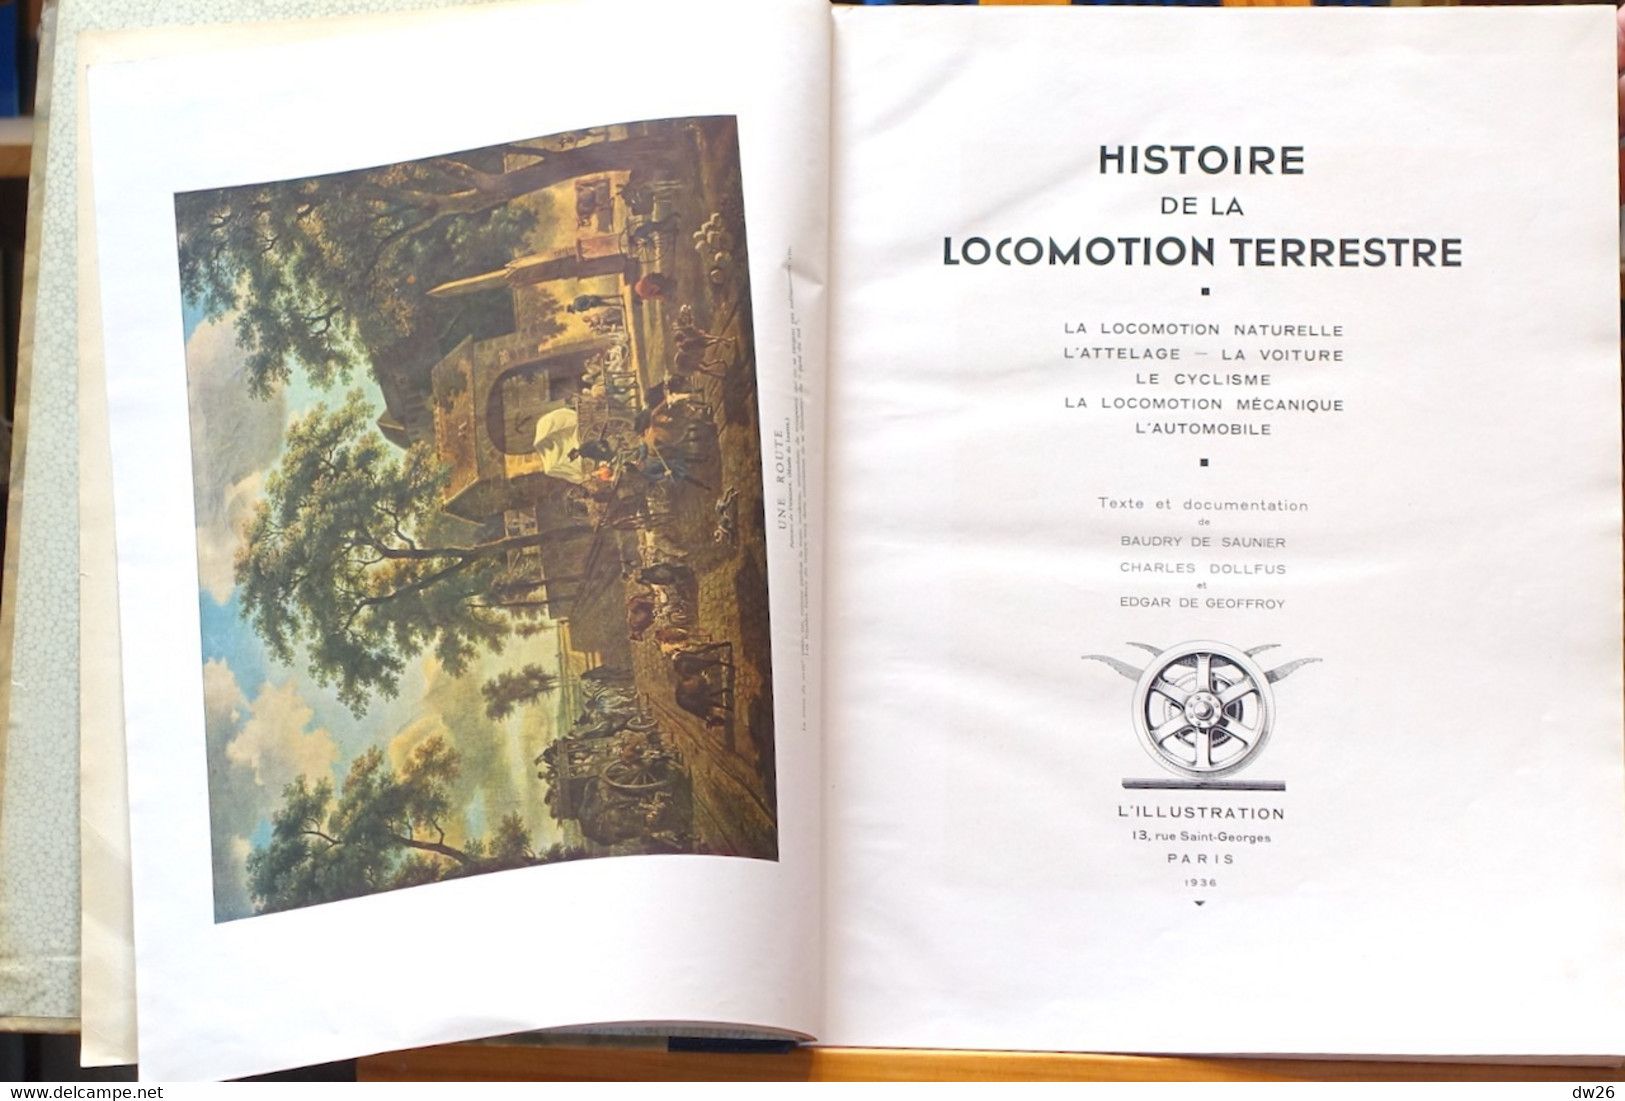 Histoire De La Locomotion Terrestre Naturelle Et Mécanique (Voiture, Cycle, Automobile) Edition L'Illustration 1935 - Geschiedenis